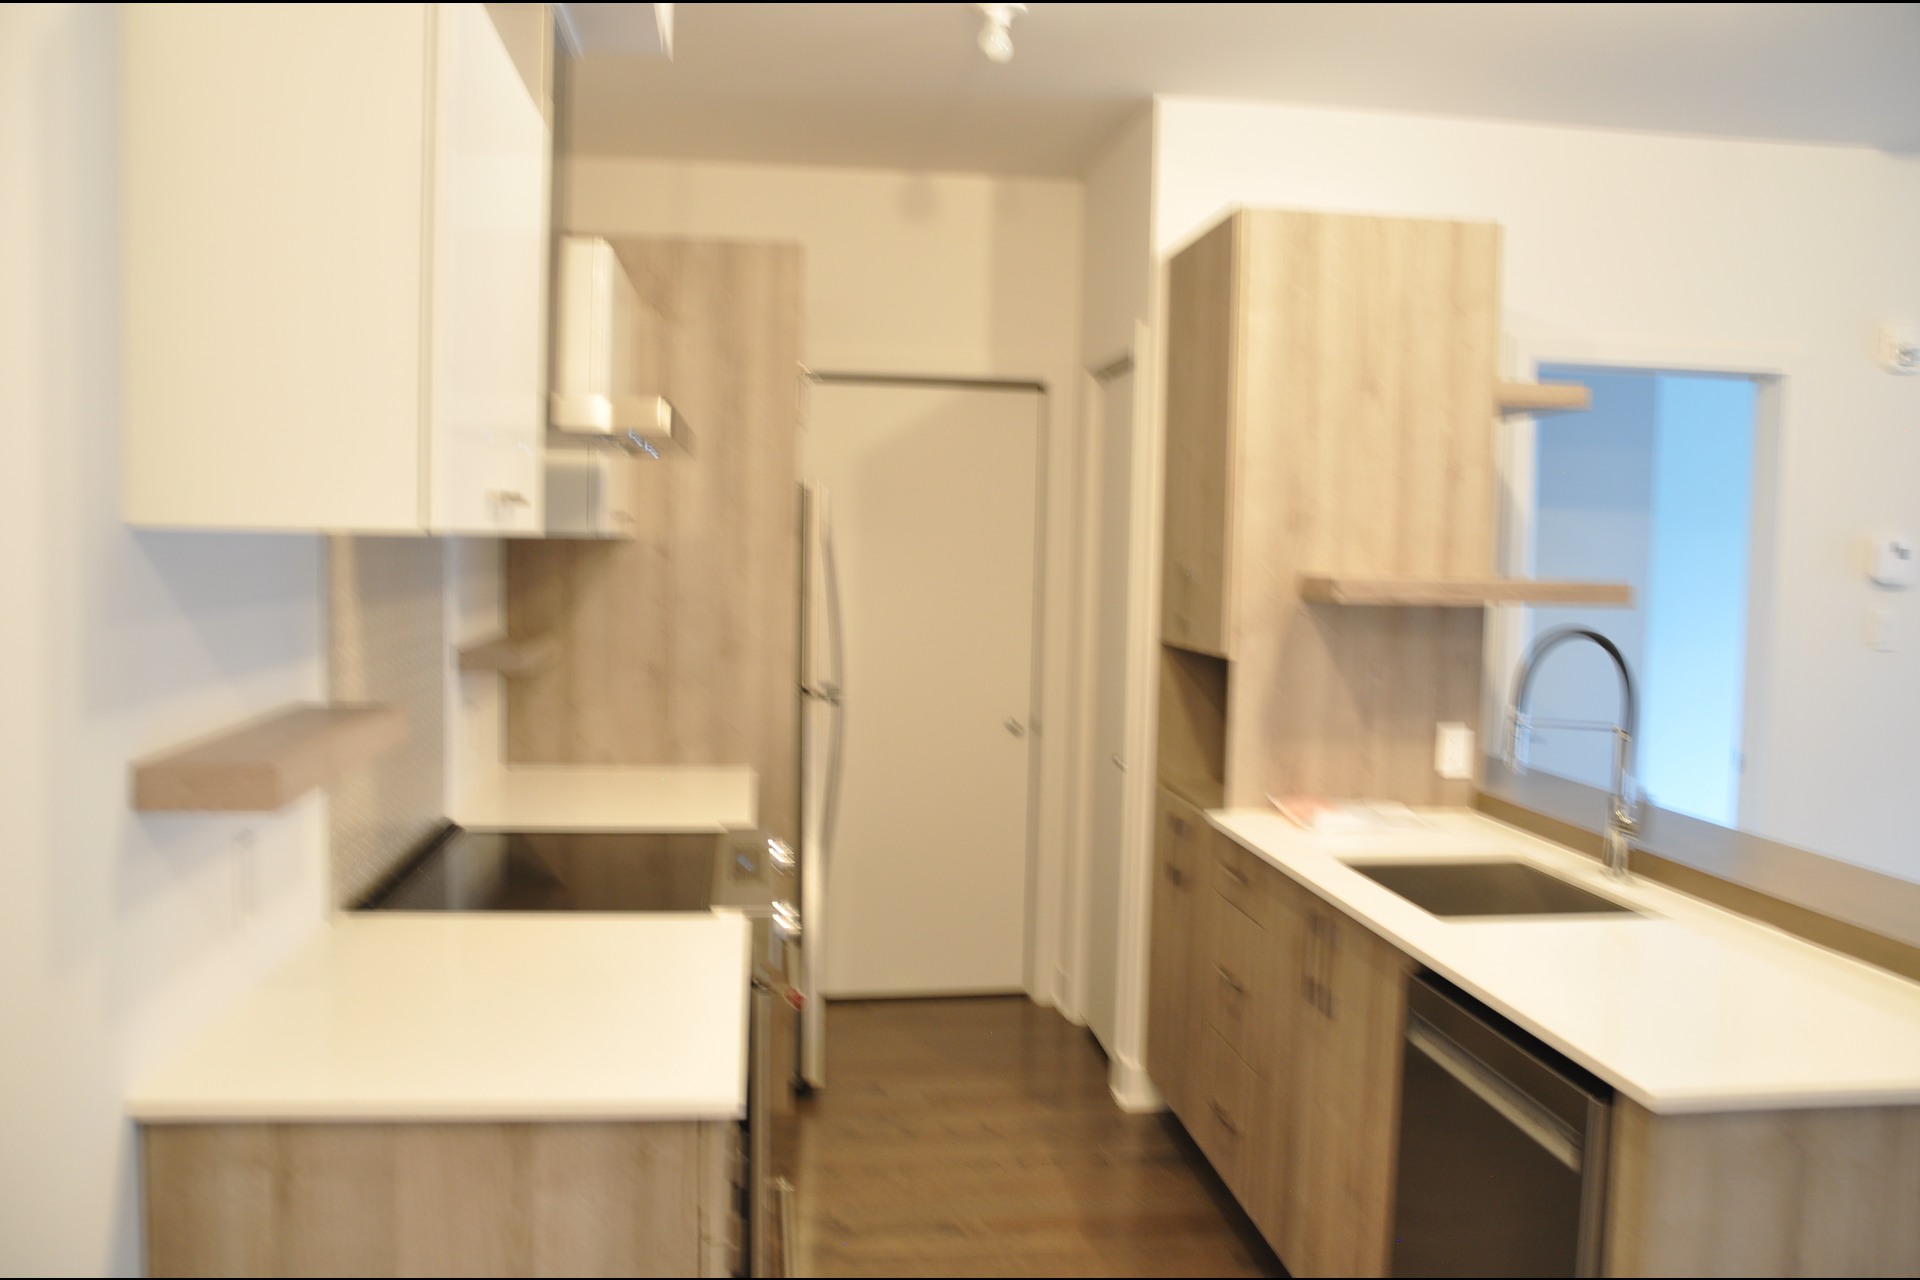 image 15 - MX - Condominio vertical - MX Para alquiler Montréal - 4 habitaciones